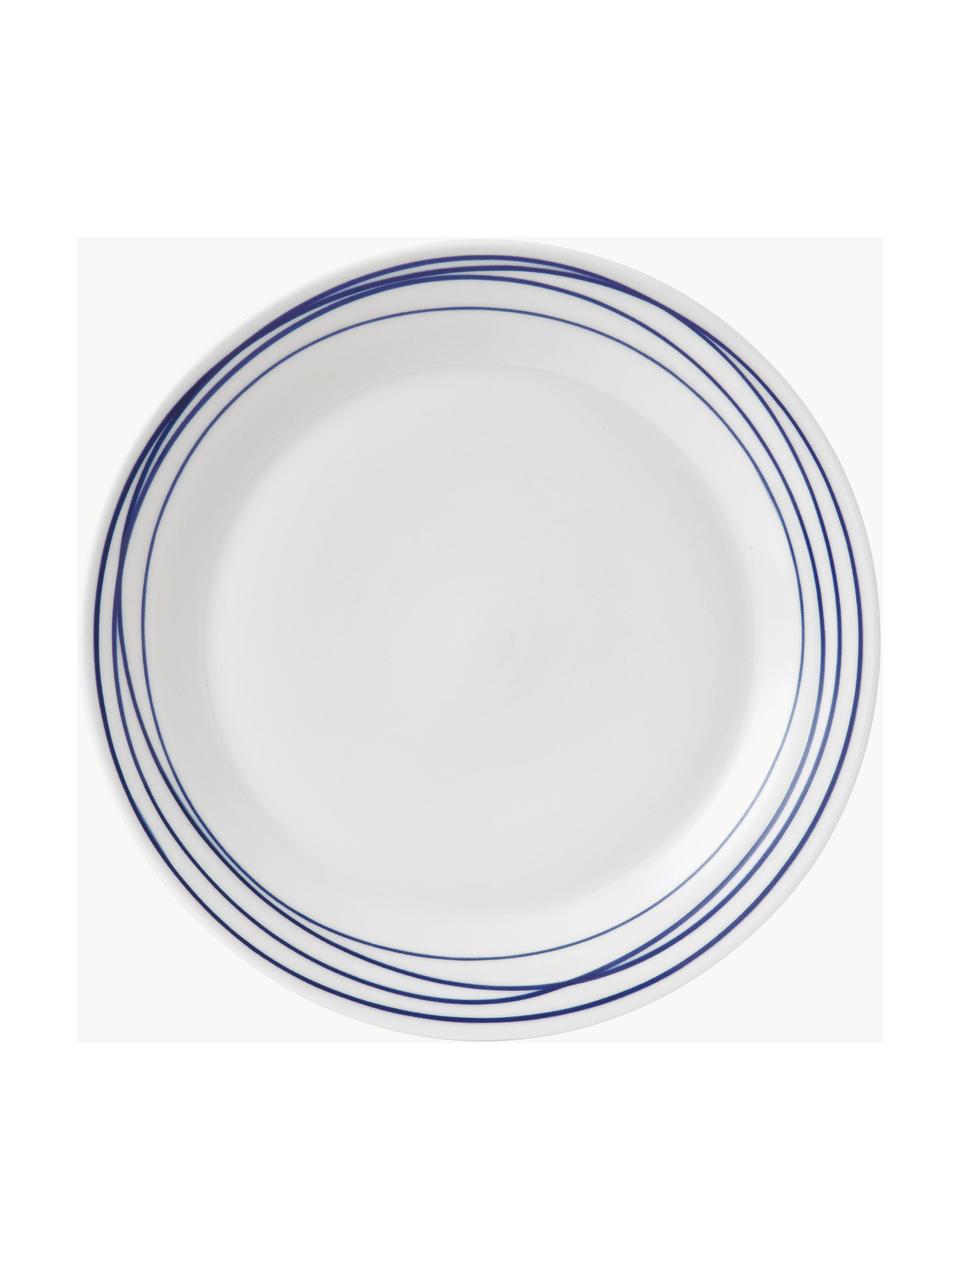 Speiseteller Pacific Blue aus Porzellan, Porzellan, Liniert, Ø 29 cm